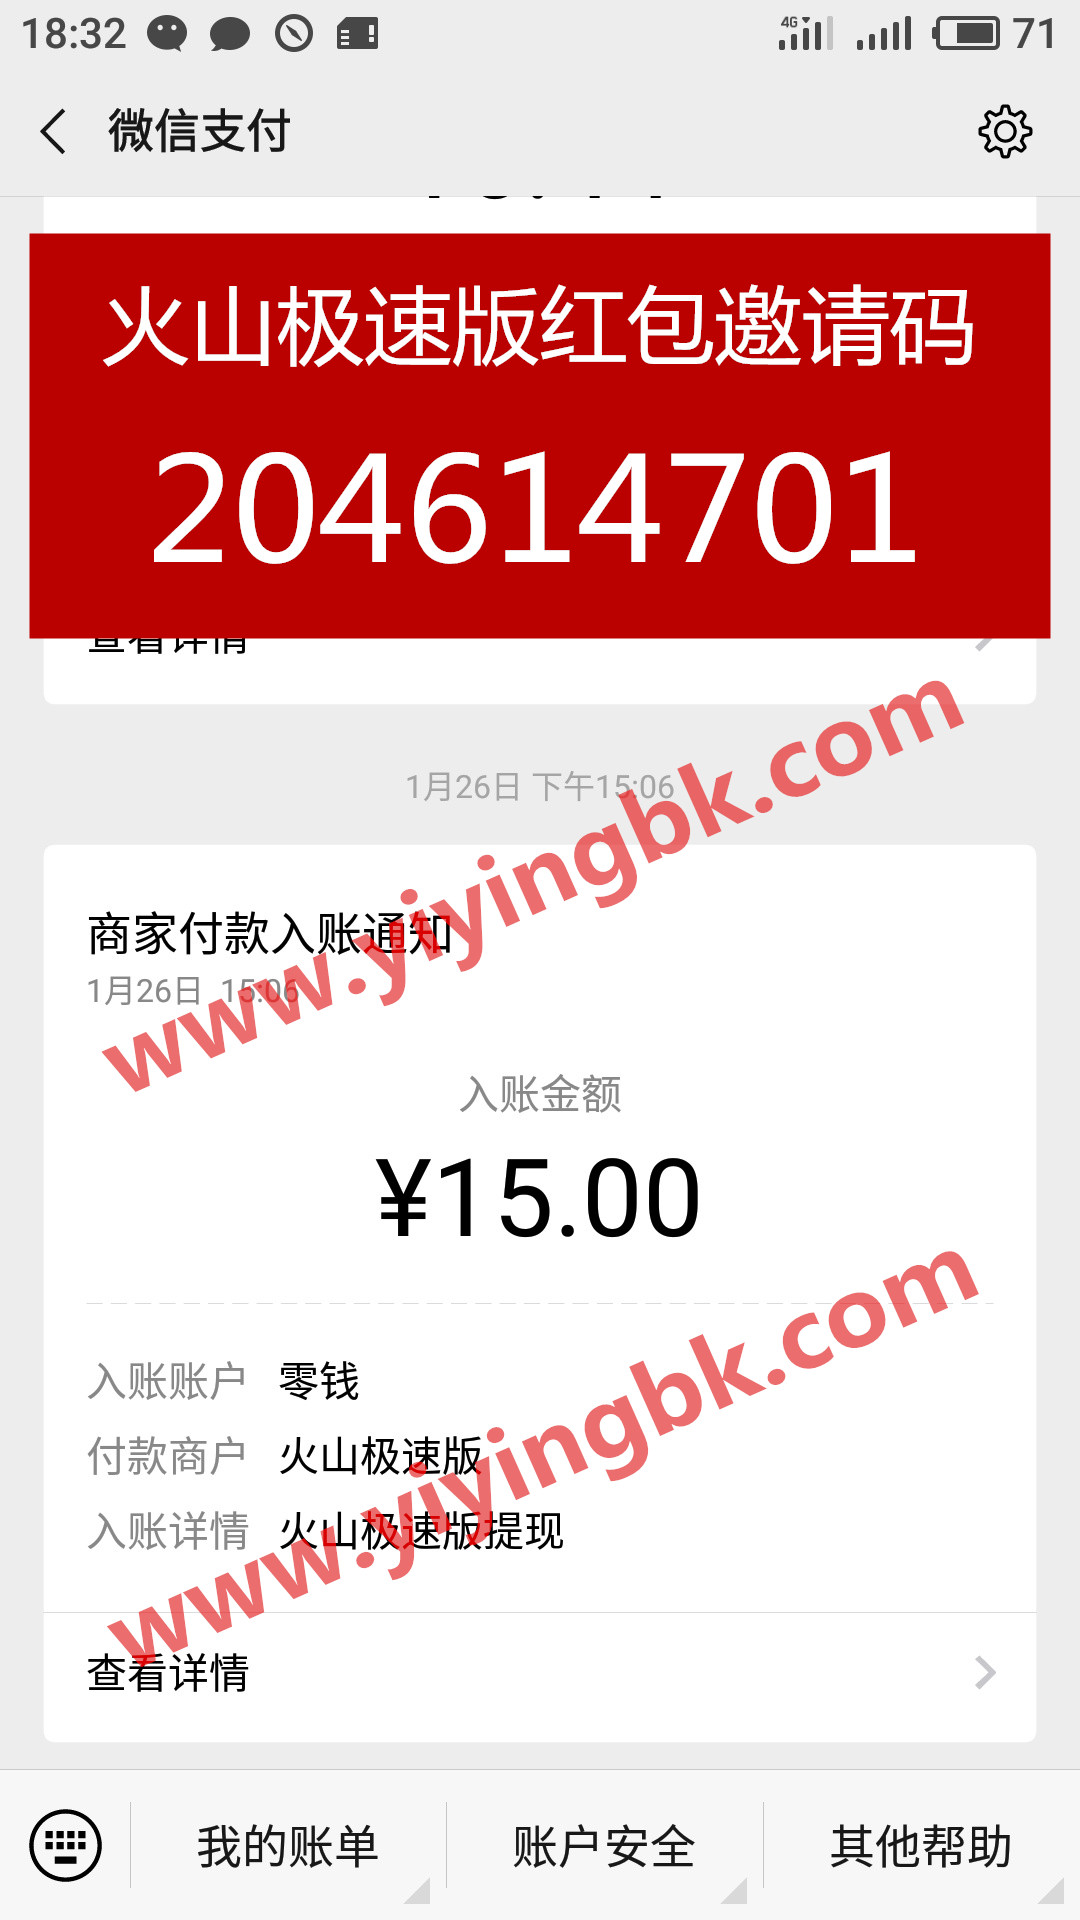 火山极速版微信提现15元，支付极速到账。www.yiyingbk.com